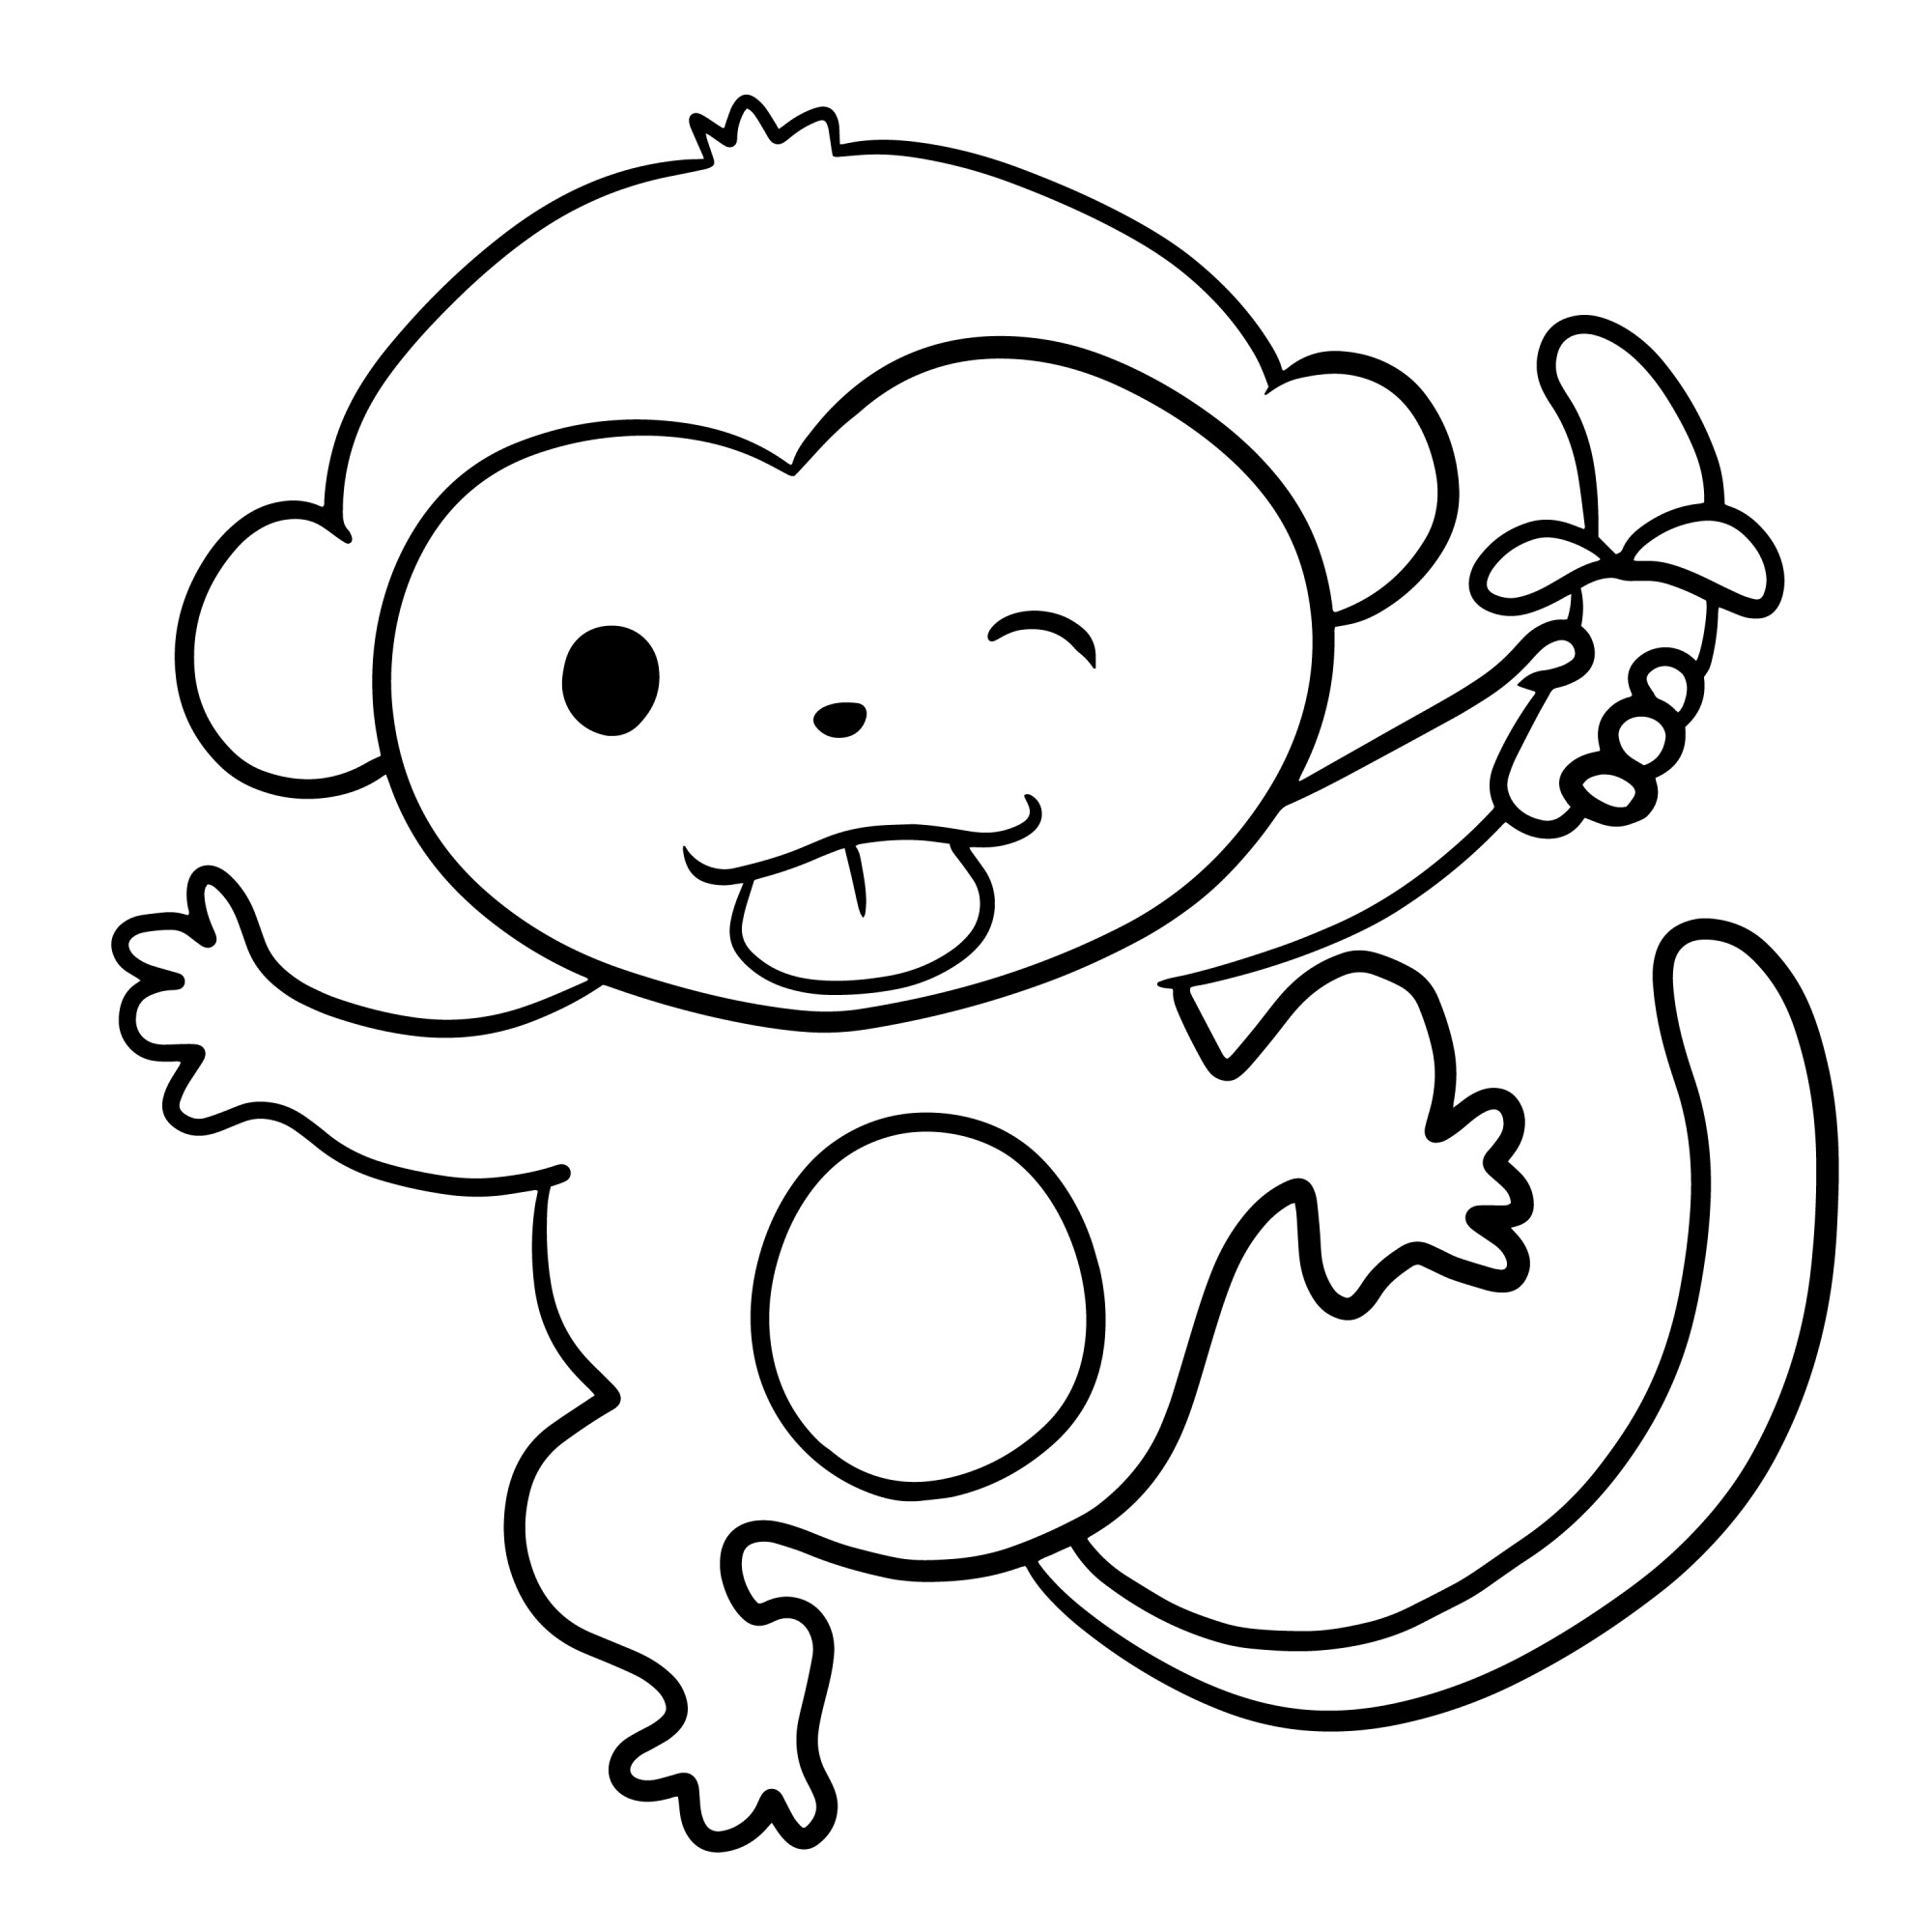 Раскраска для детей: обезьянка танцует с бананом в руке и подмигивает глазом